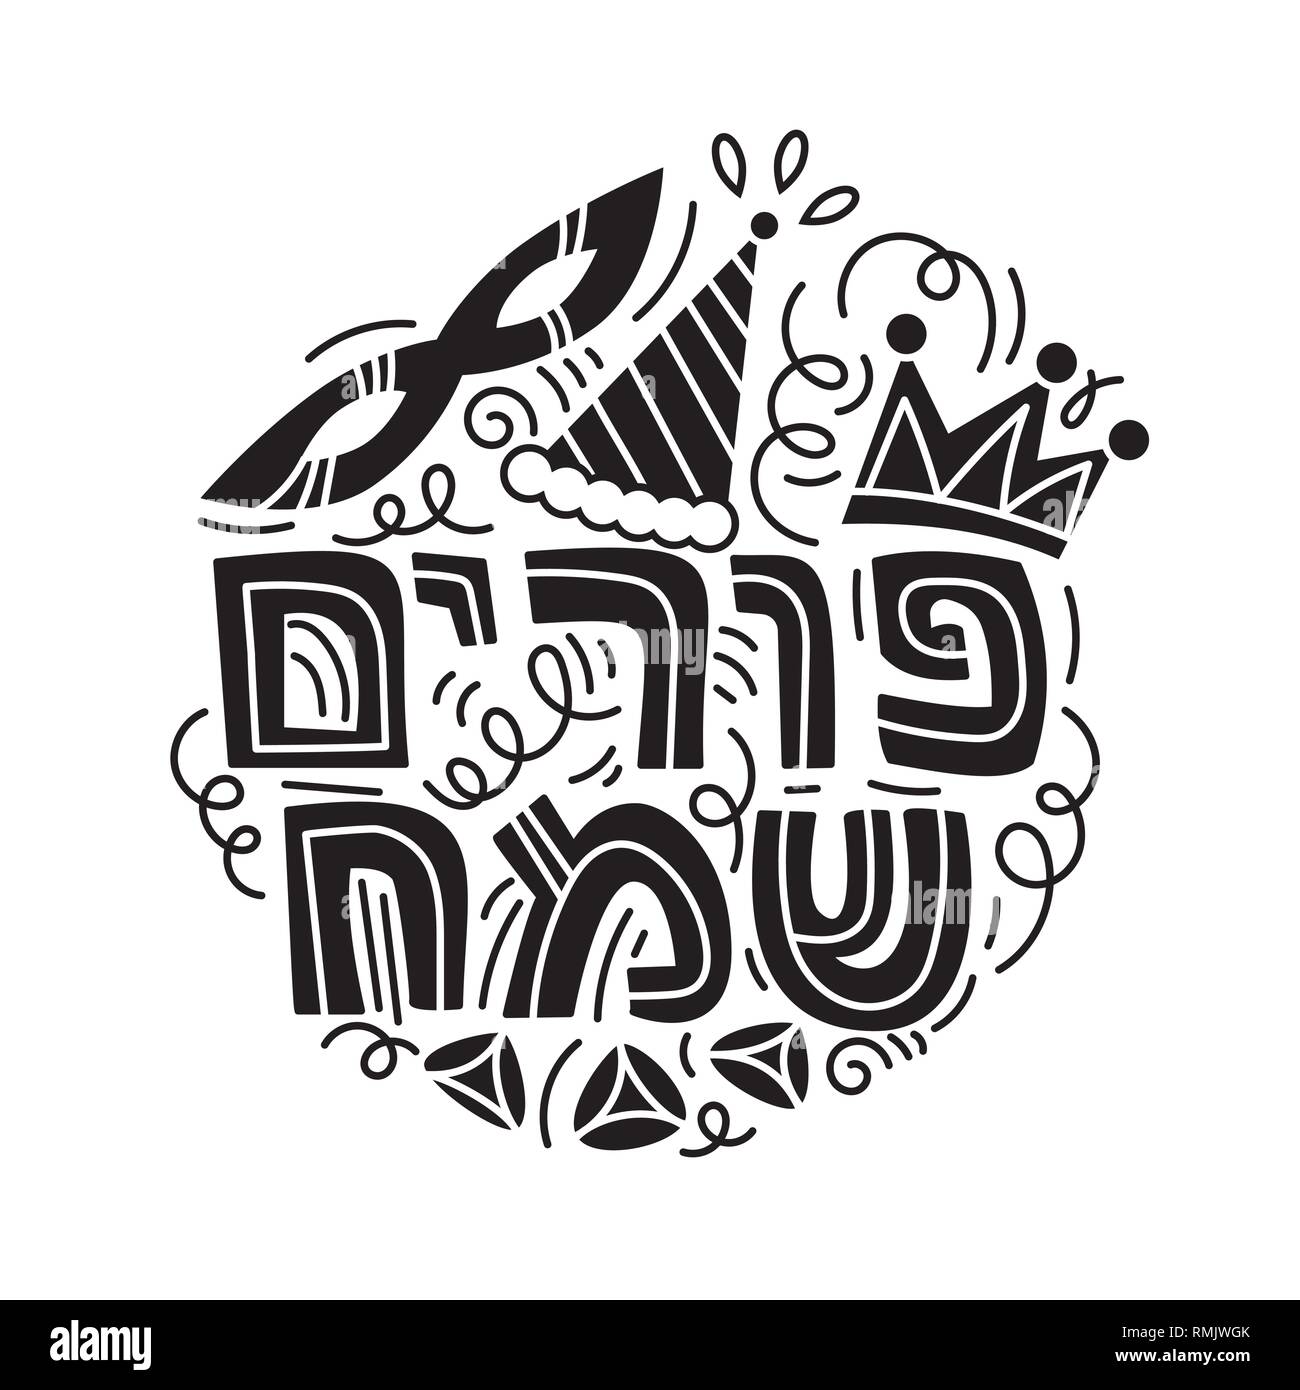 Tarjeta de felicitación de Purim en doodle estilo con la máscara de carnaval, sombreros, corona, hacer ruido, hamantaschen y texto hebreo feliz Purim. En blanco y negro ilustración vectorial. Aislado sobre fondo blanco. Ilustración del Vector